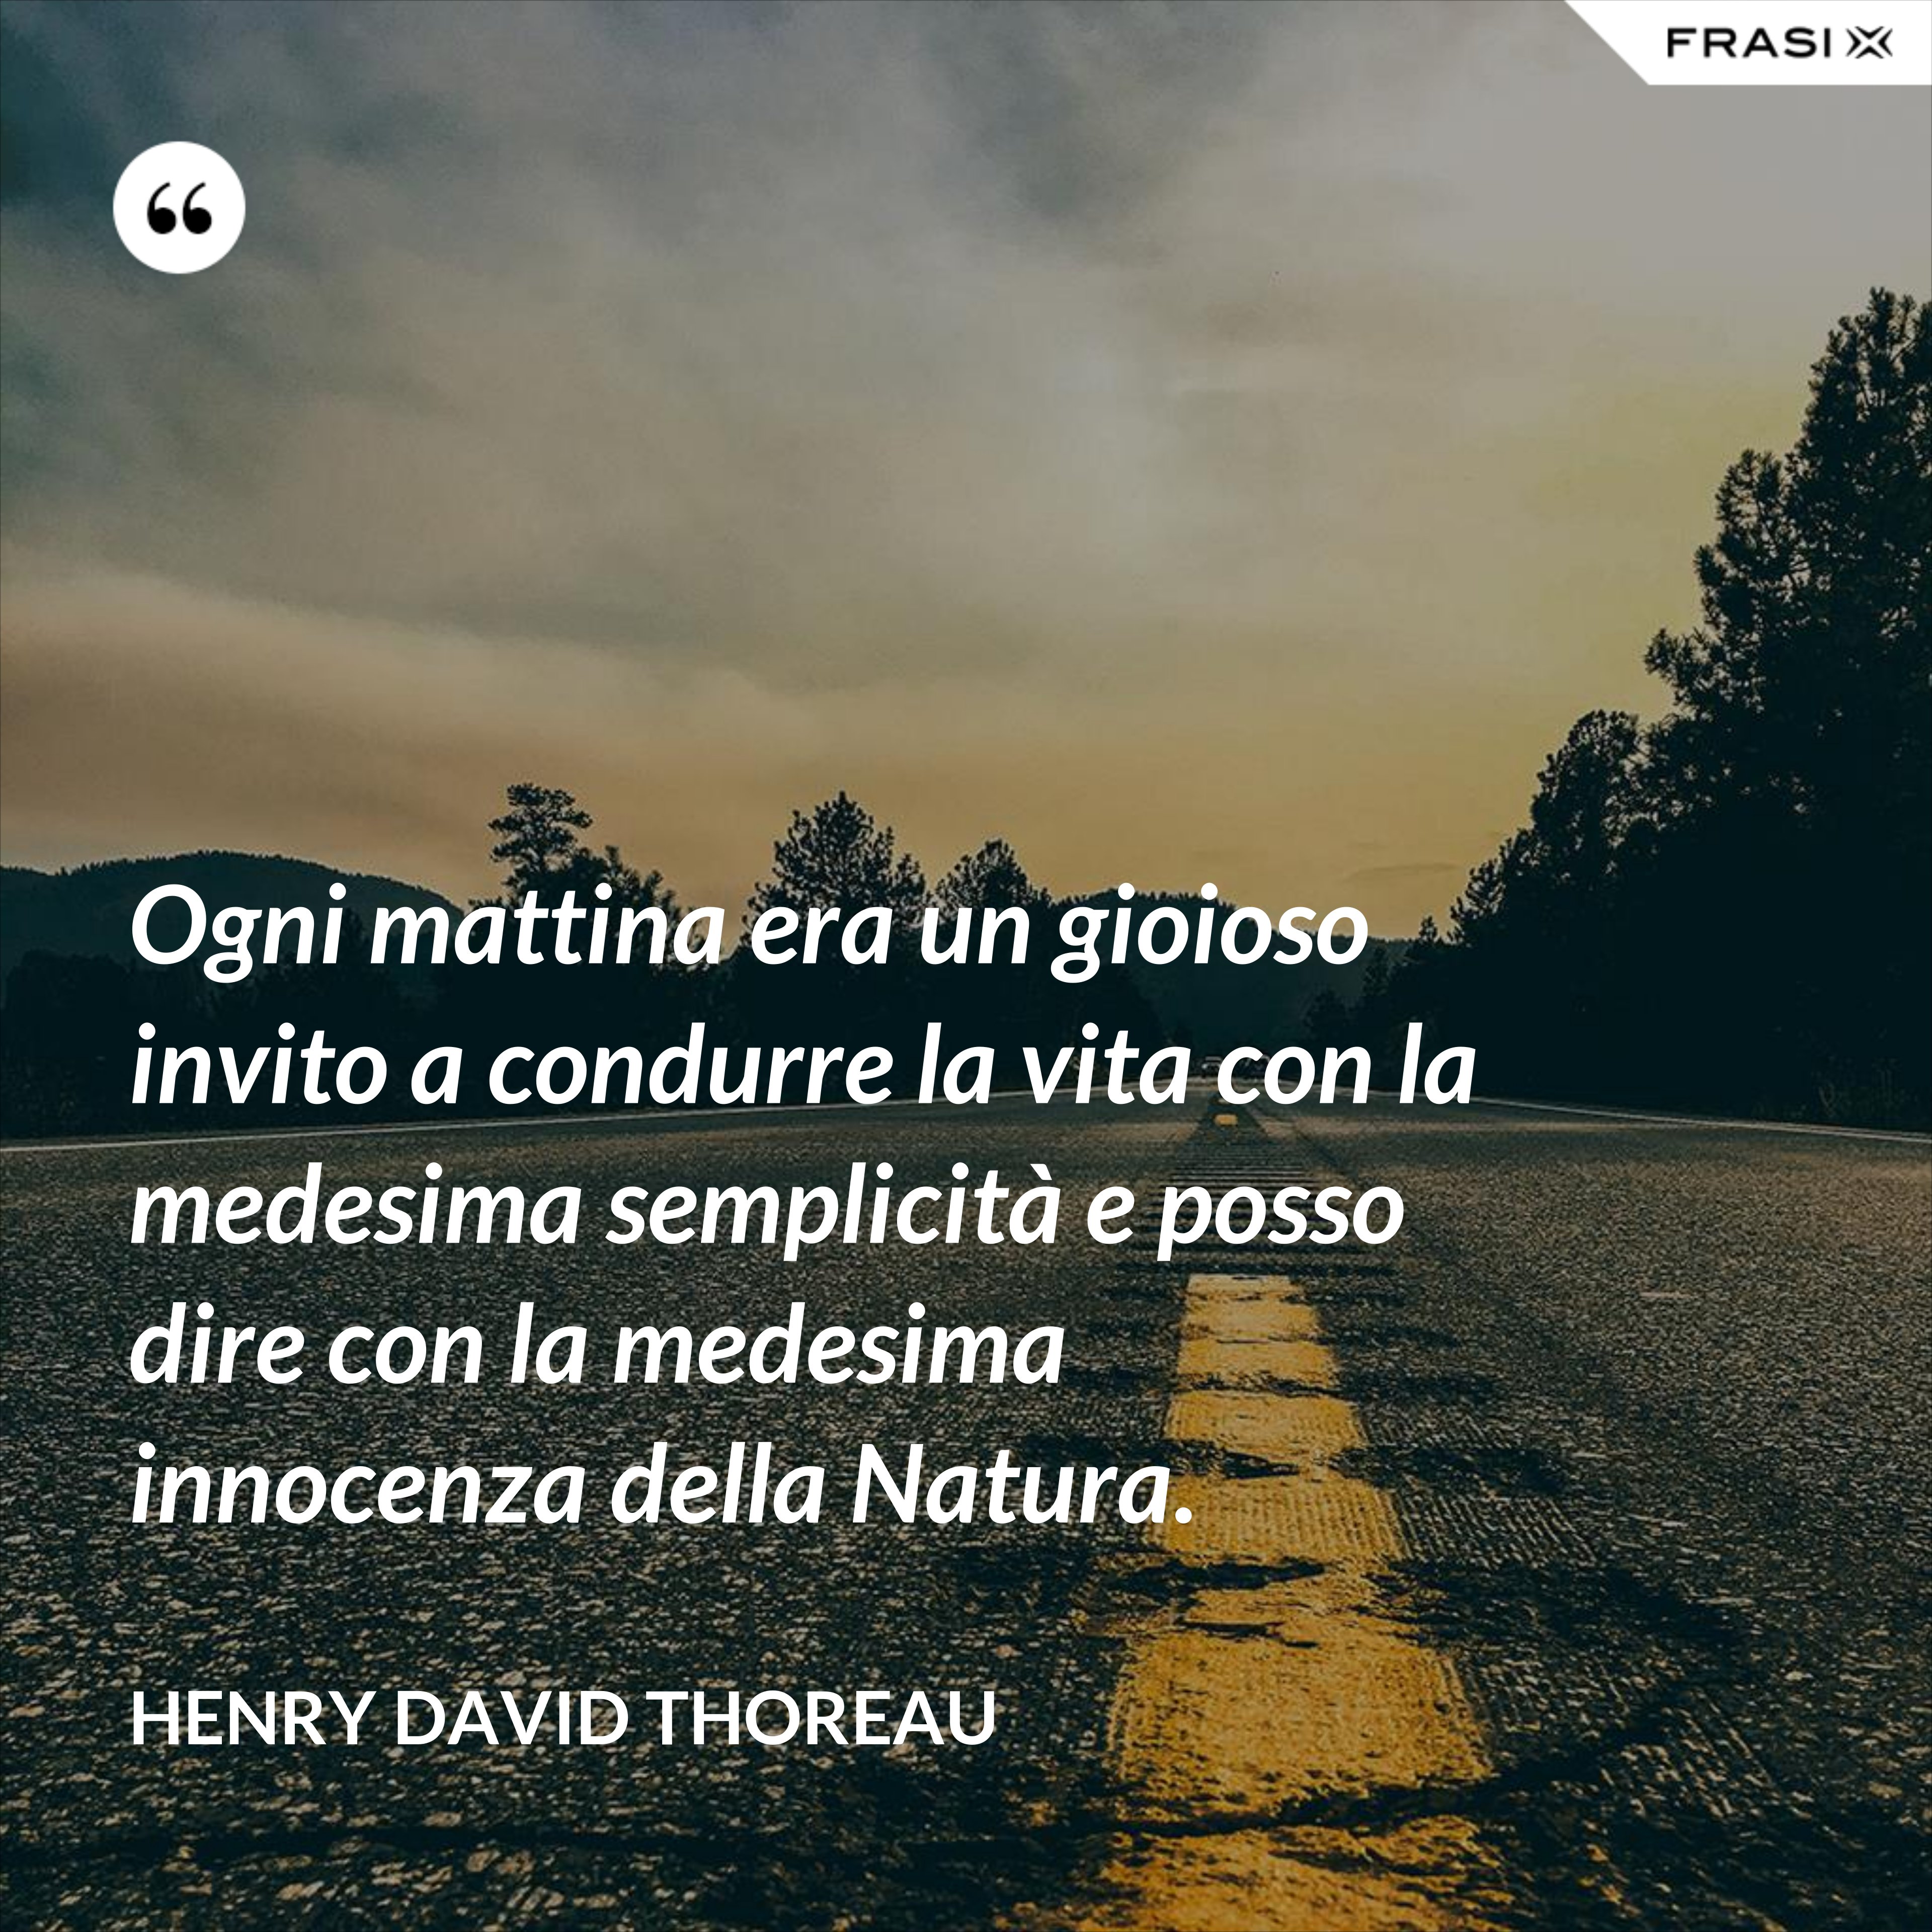 Ogni mattina era un gioioso invito a condurre la vita con la medesima semplicità e posso dire con la medesima innocenza della Natura. - Henry David Thoreau